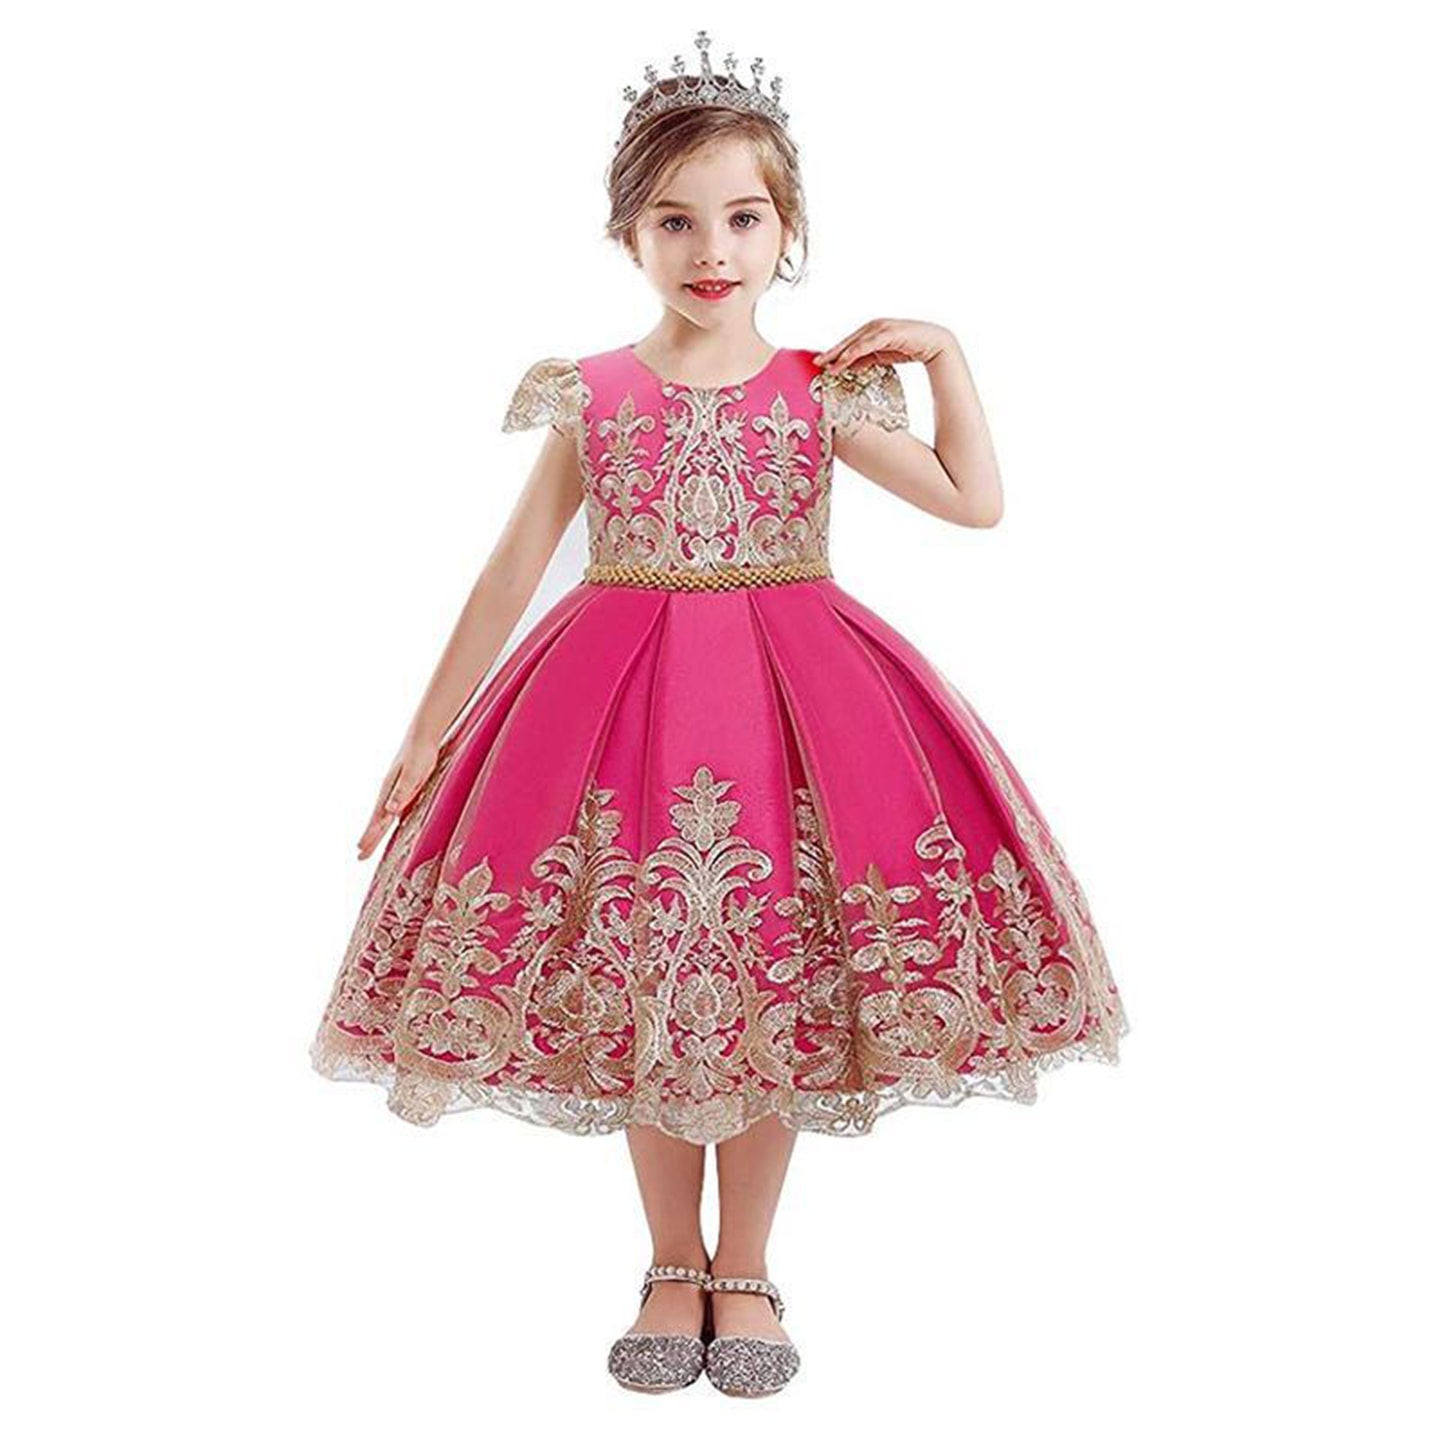 Prinsessklänning barn (1 av 16)